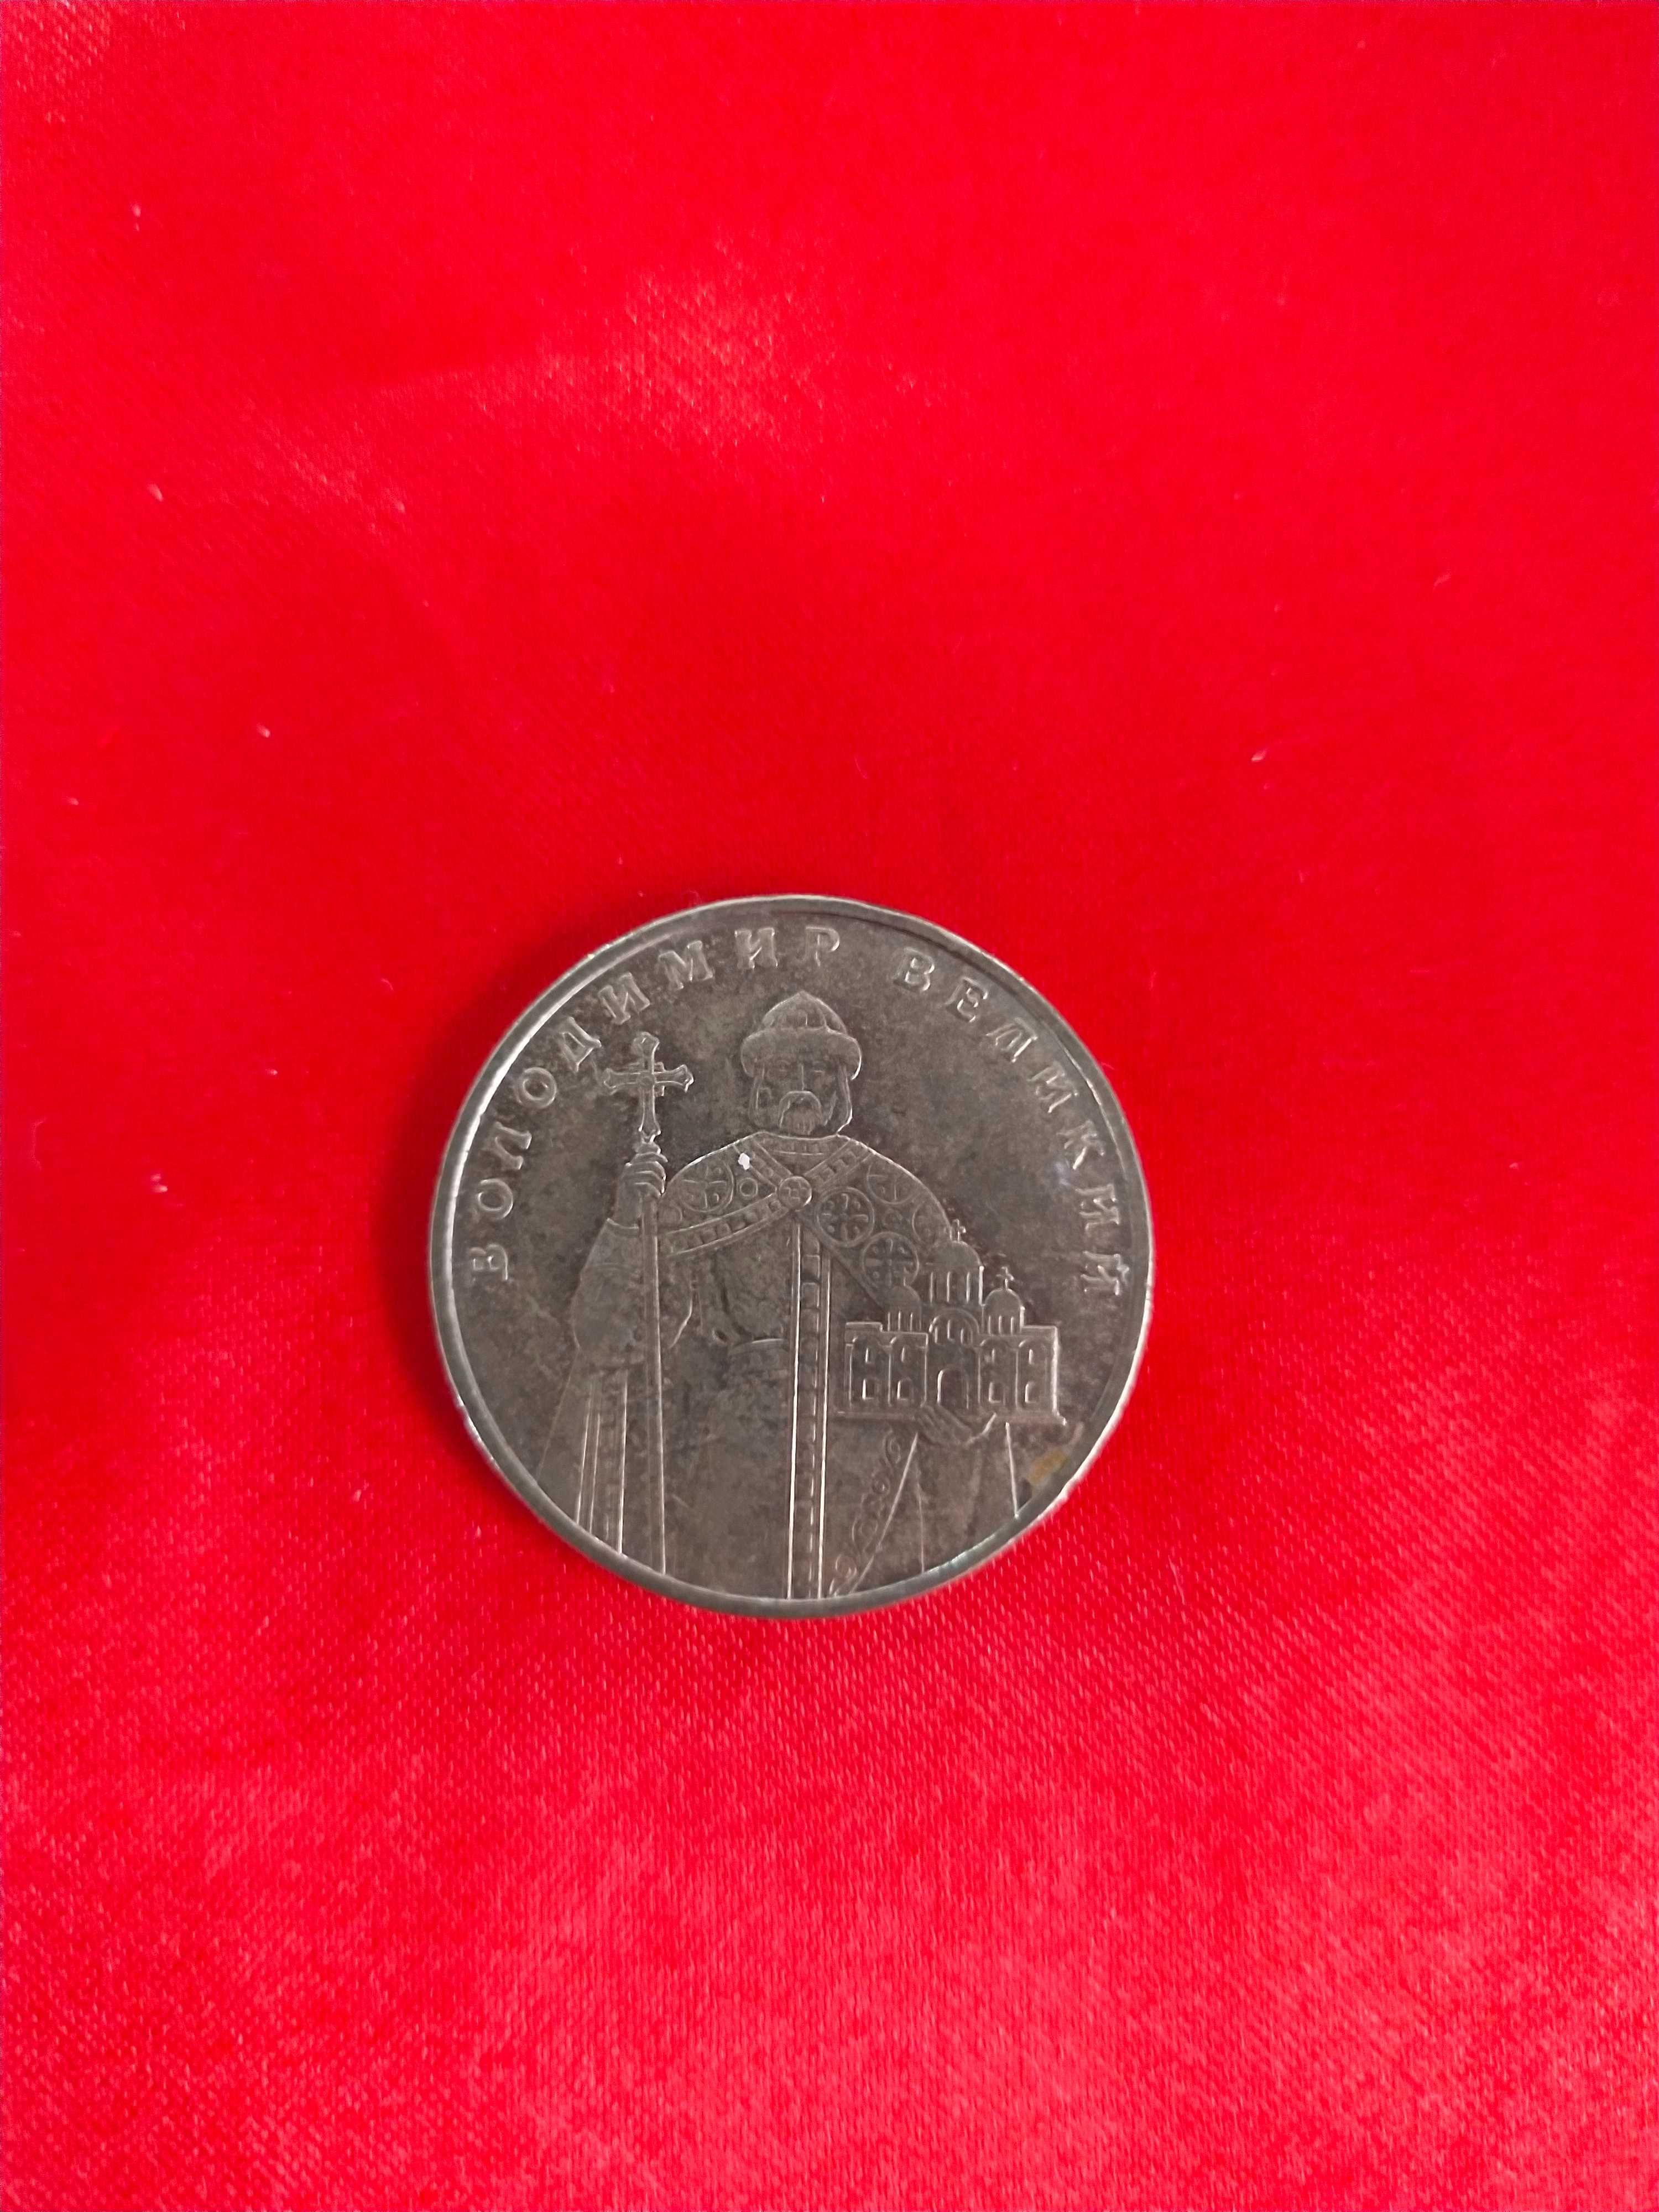 Продам юбилейный рубль, 50 копеек, 1 украинский гривен